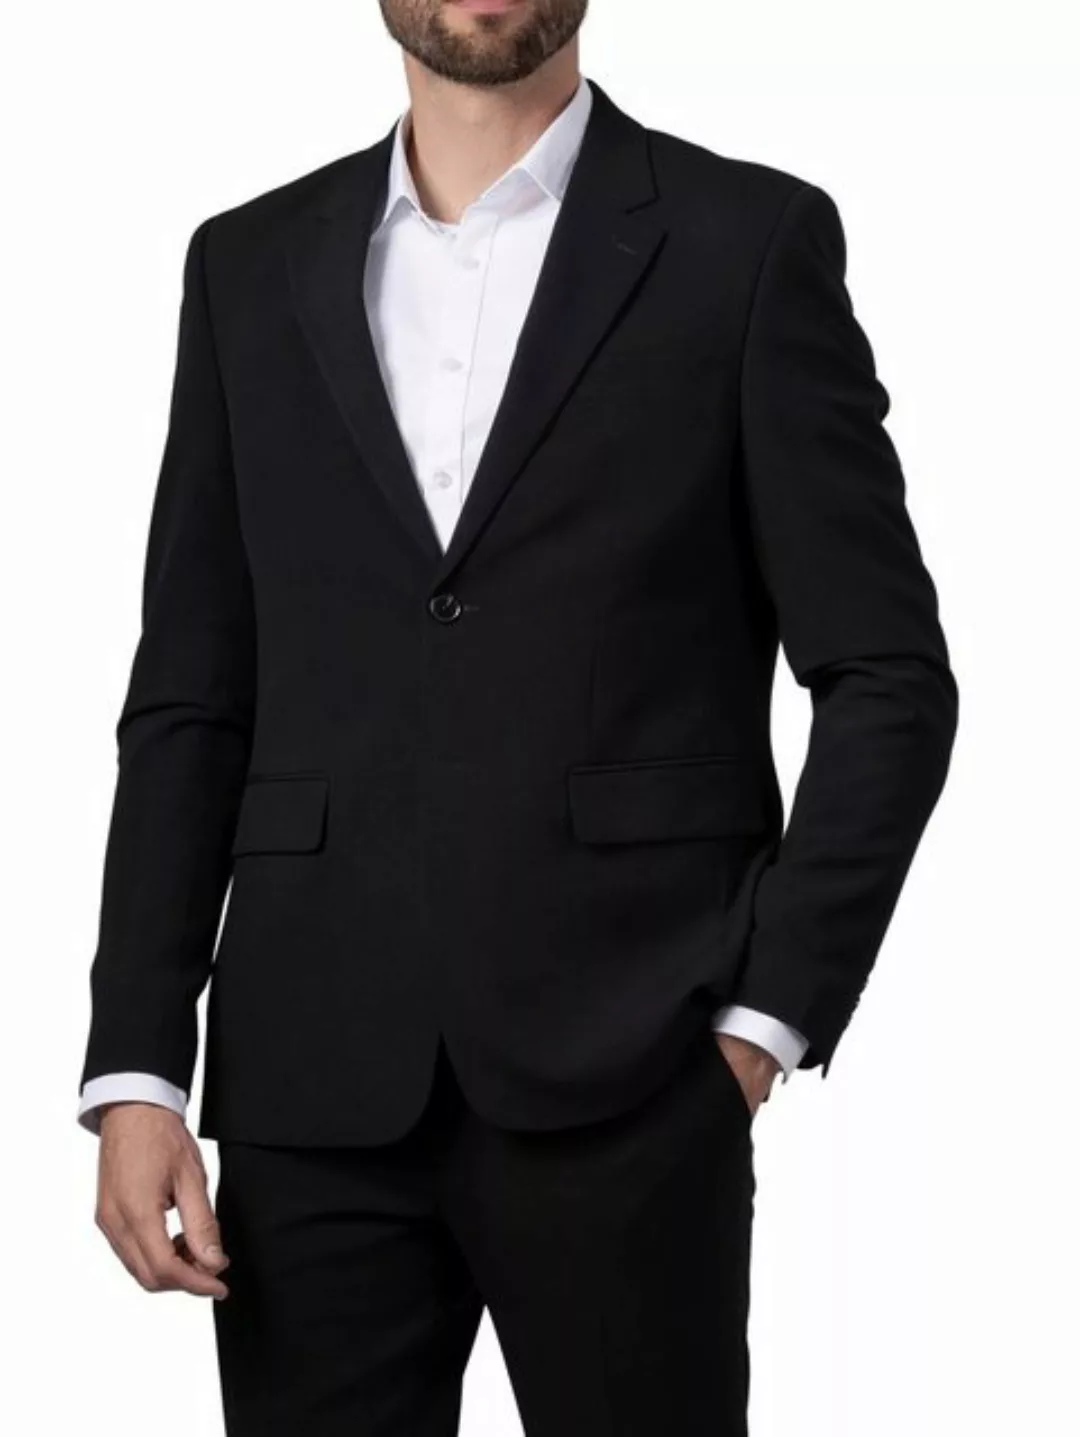 Hirschthal Anzugsakko Herren 2-Knopf Sakko oder Business Anzug mit Anzughos günstig online kaufen